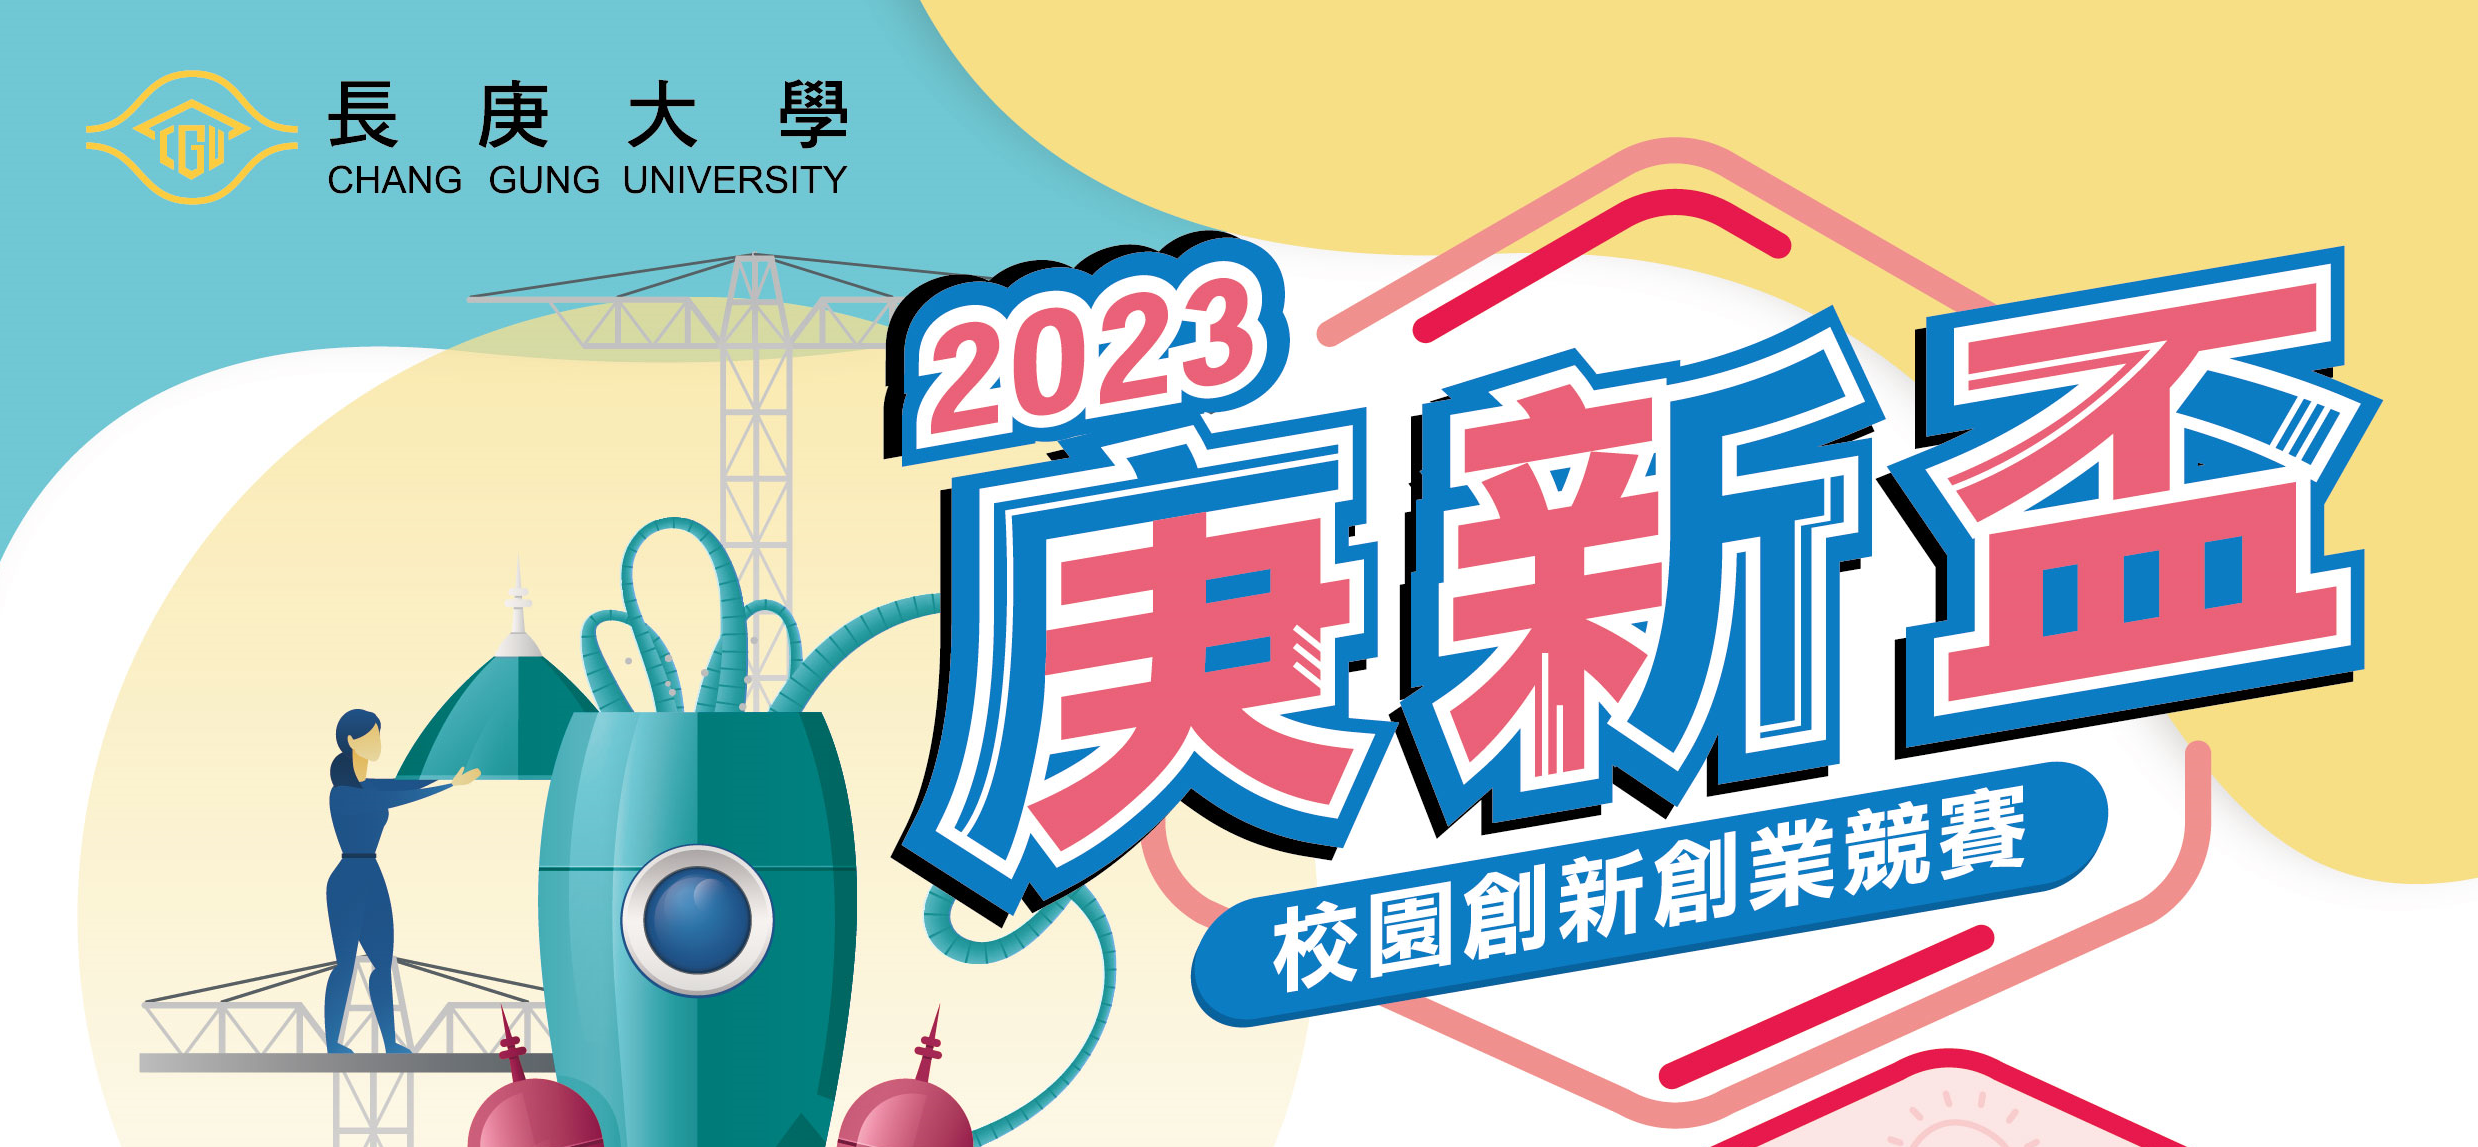 2023長庚大學【庚新盃】校園創新創業競賽，歡迎各系所師生踴躍參與競賽。